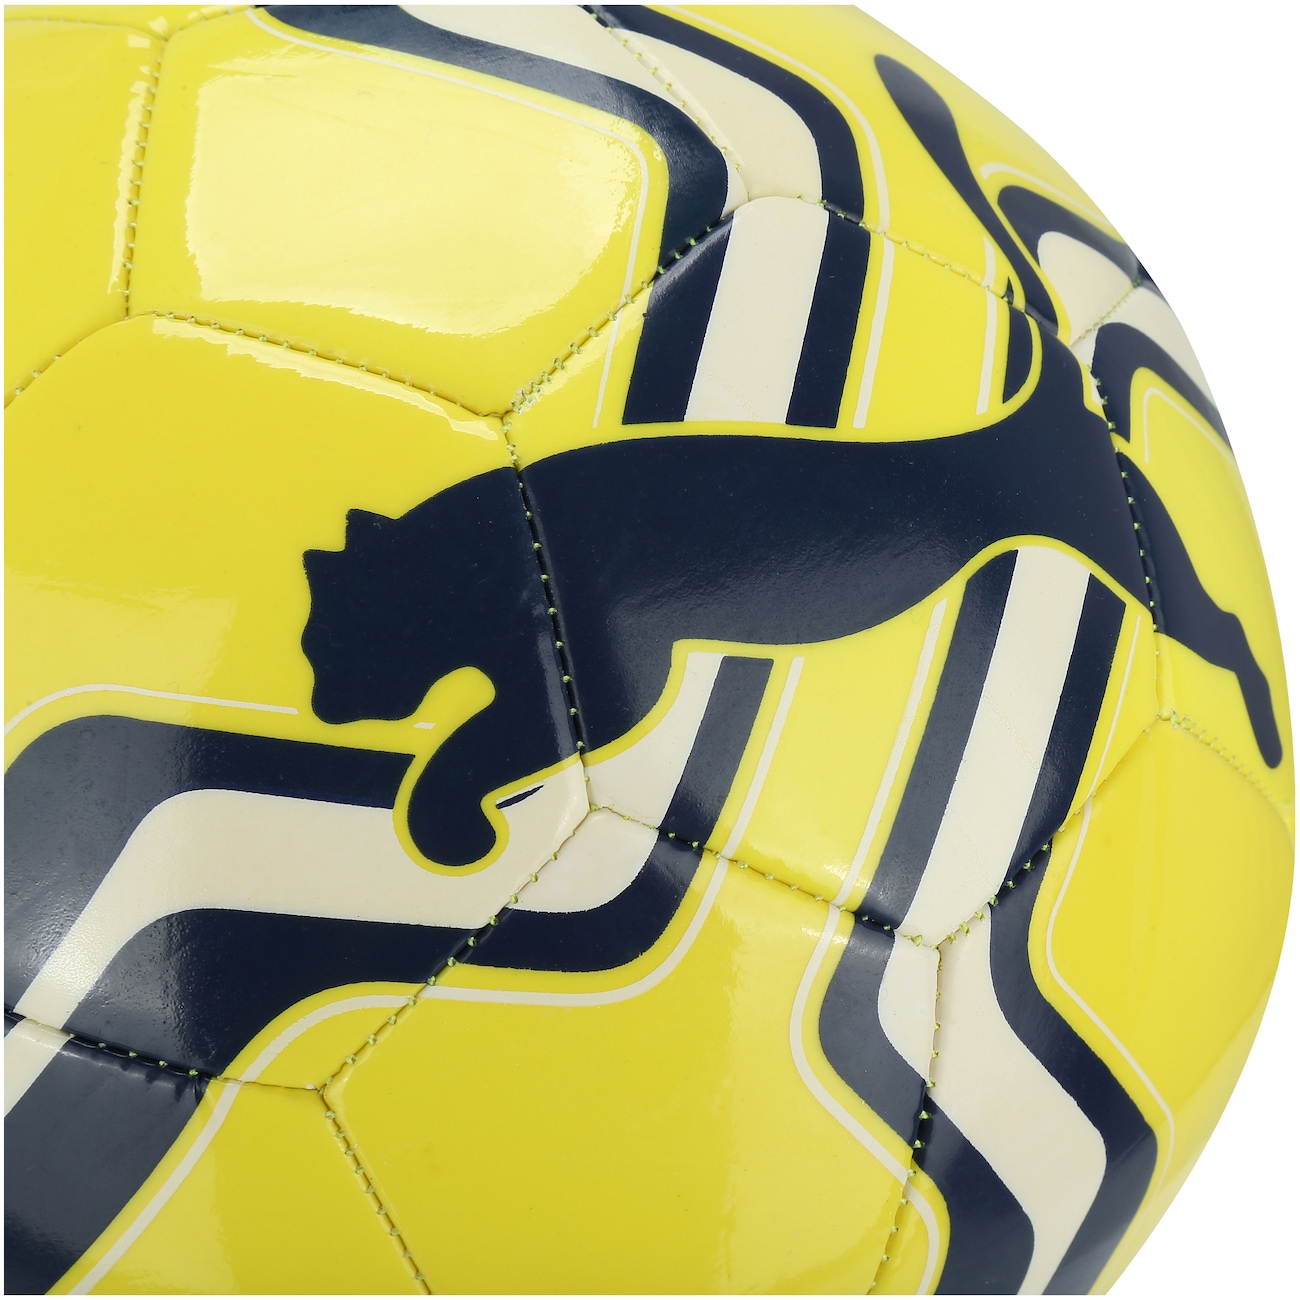 Bola Futebol De Campo Puma Big Cat 5 - Amarelo E Preto - UNISPORT